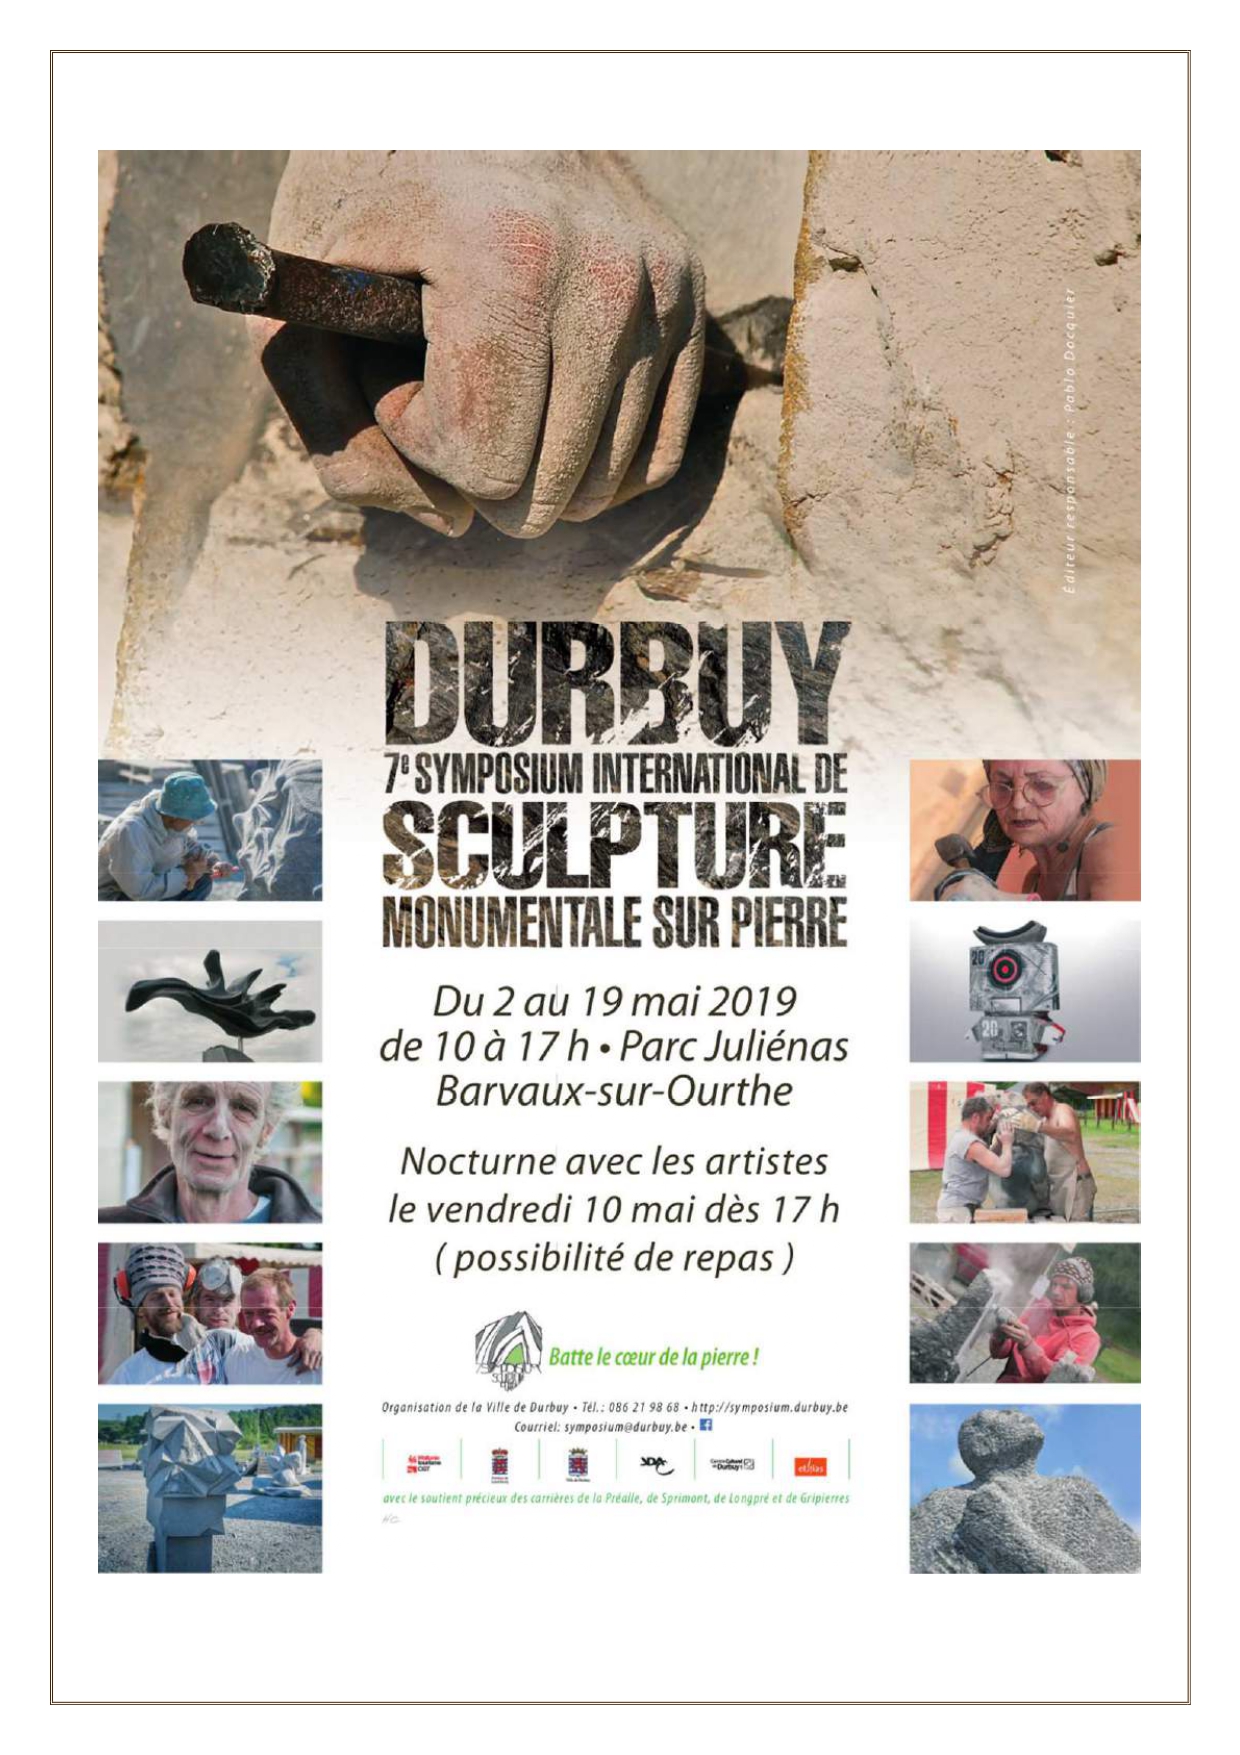 7ème symposium international de sculpture sur pierre de Durbuy